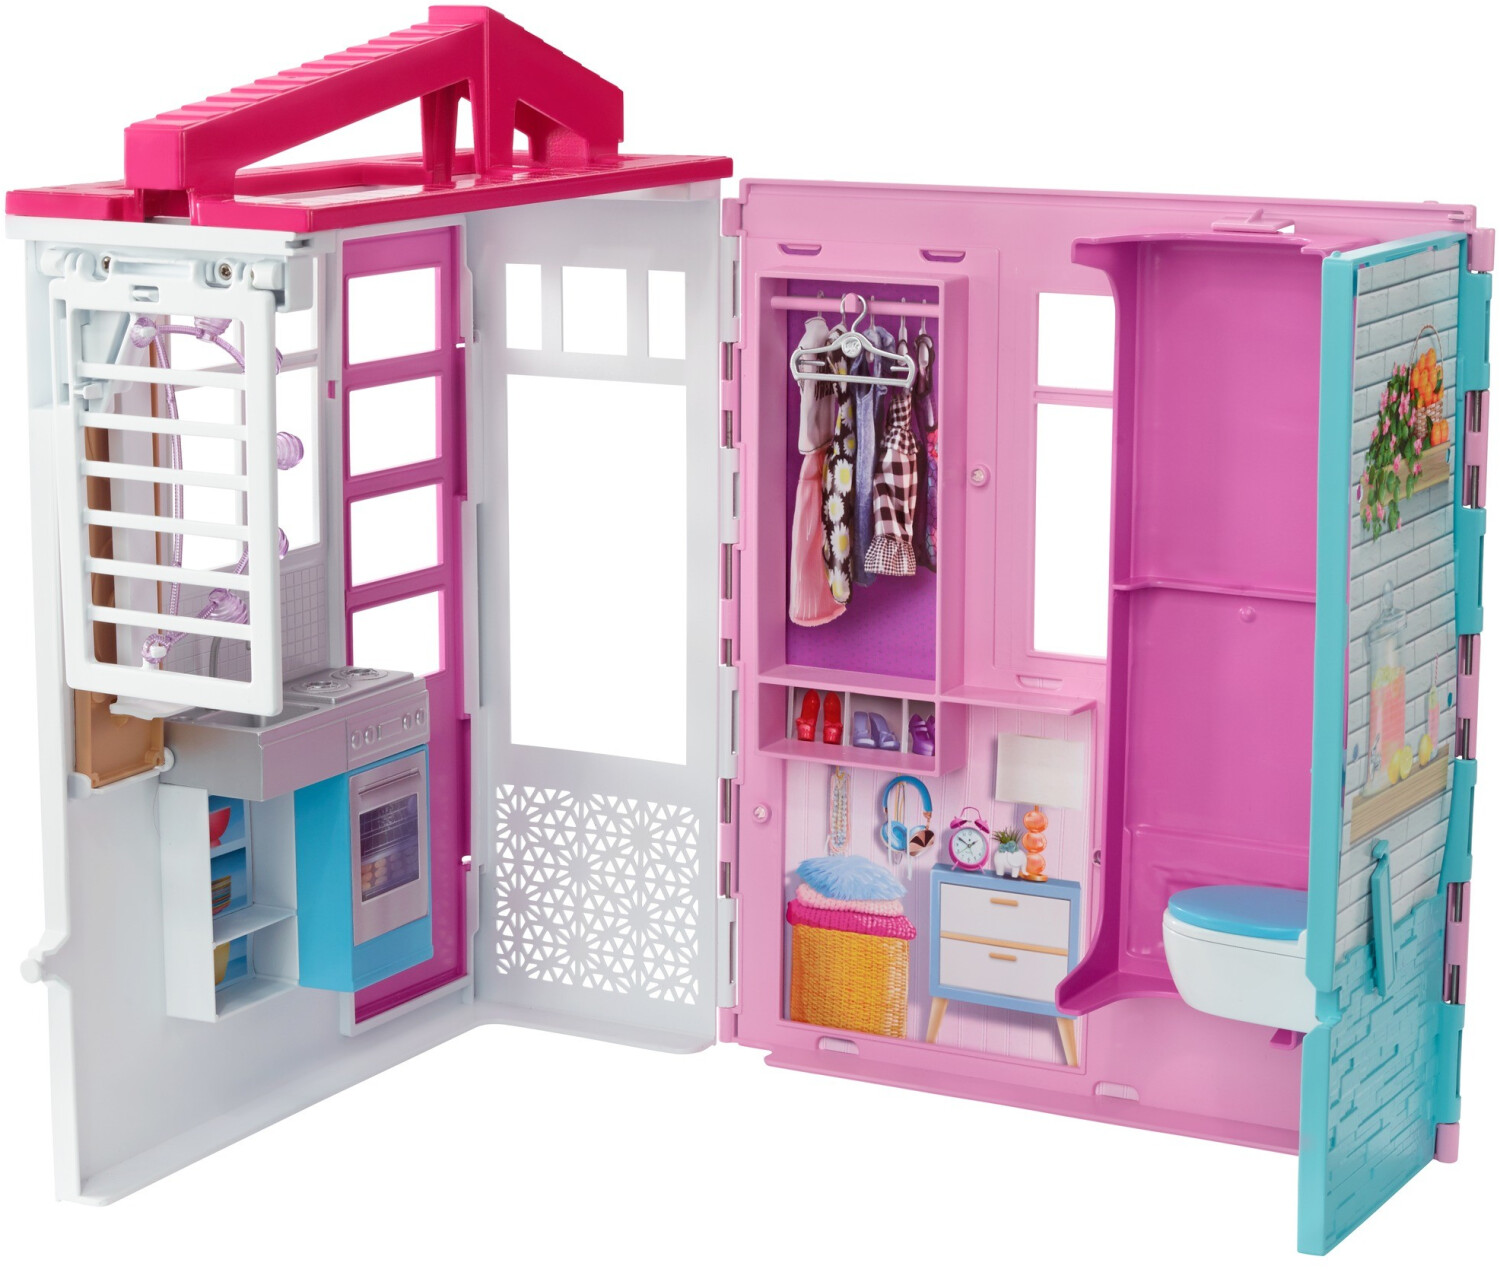 Promo Maison transportable de Barbie chez Carrefour